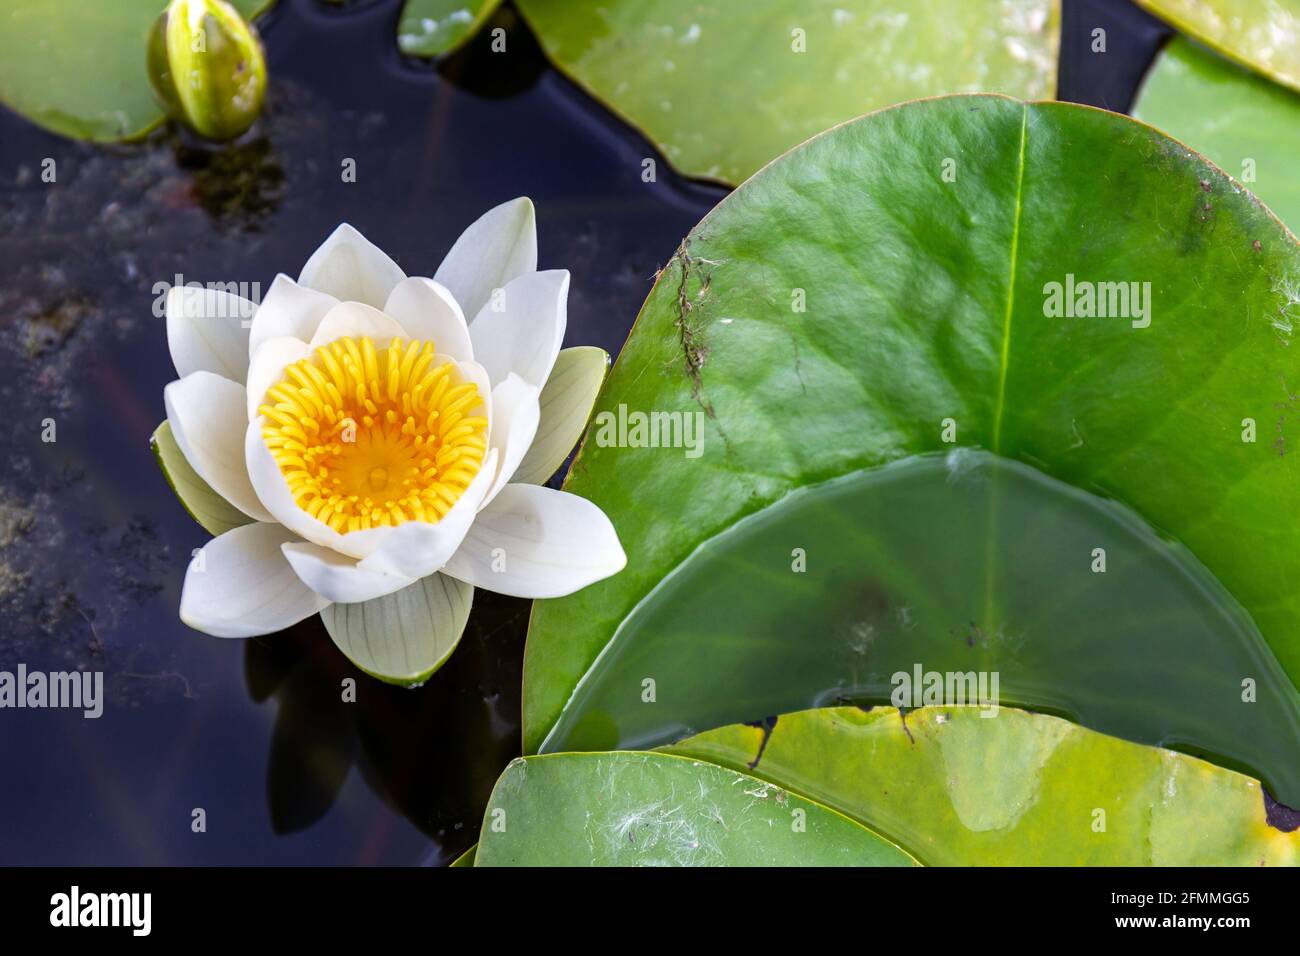 Eine Blume aus Seerose 'Alba' (Lotos) mit einem gelben Herz brillant, der in einem Teich mit seinen charakteristischen großen runden Blättern schwimmt. Spa-Konzept. Stockfoto